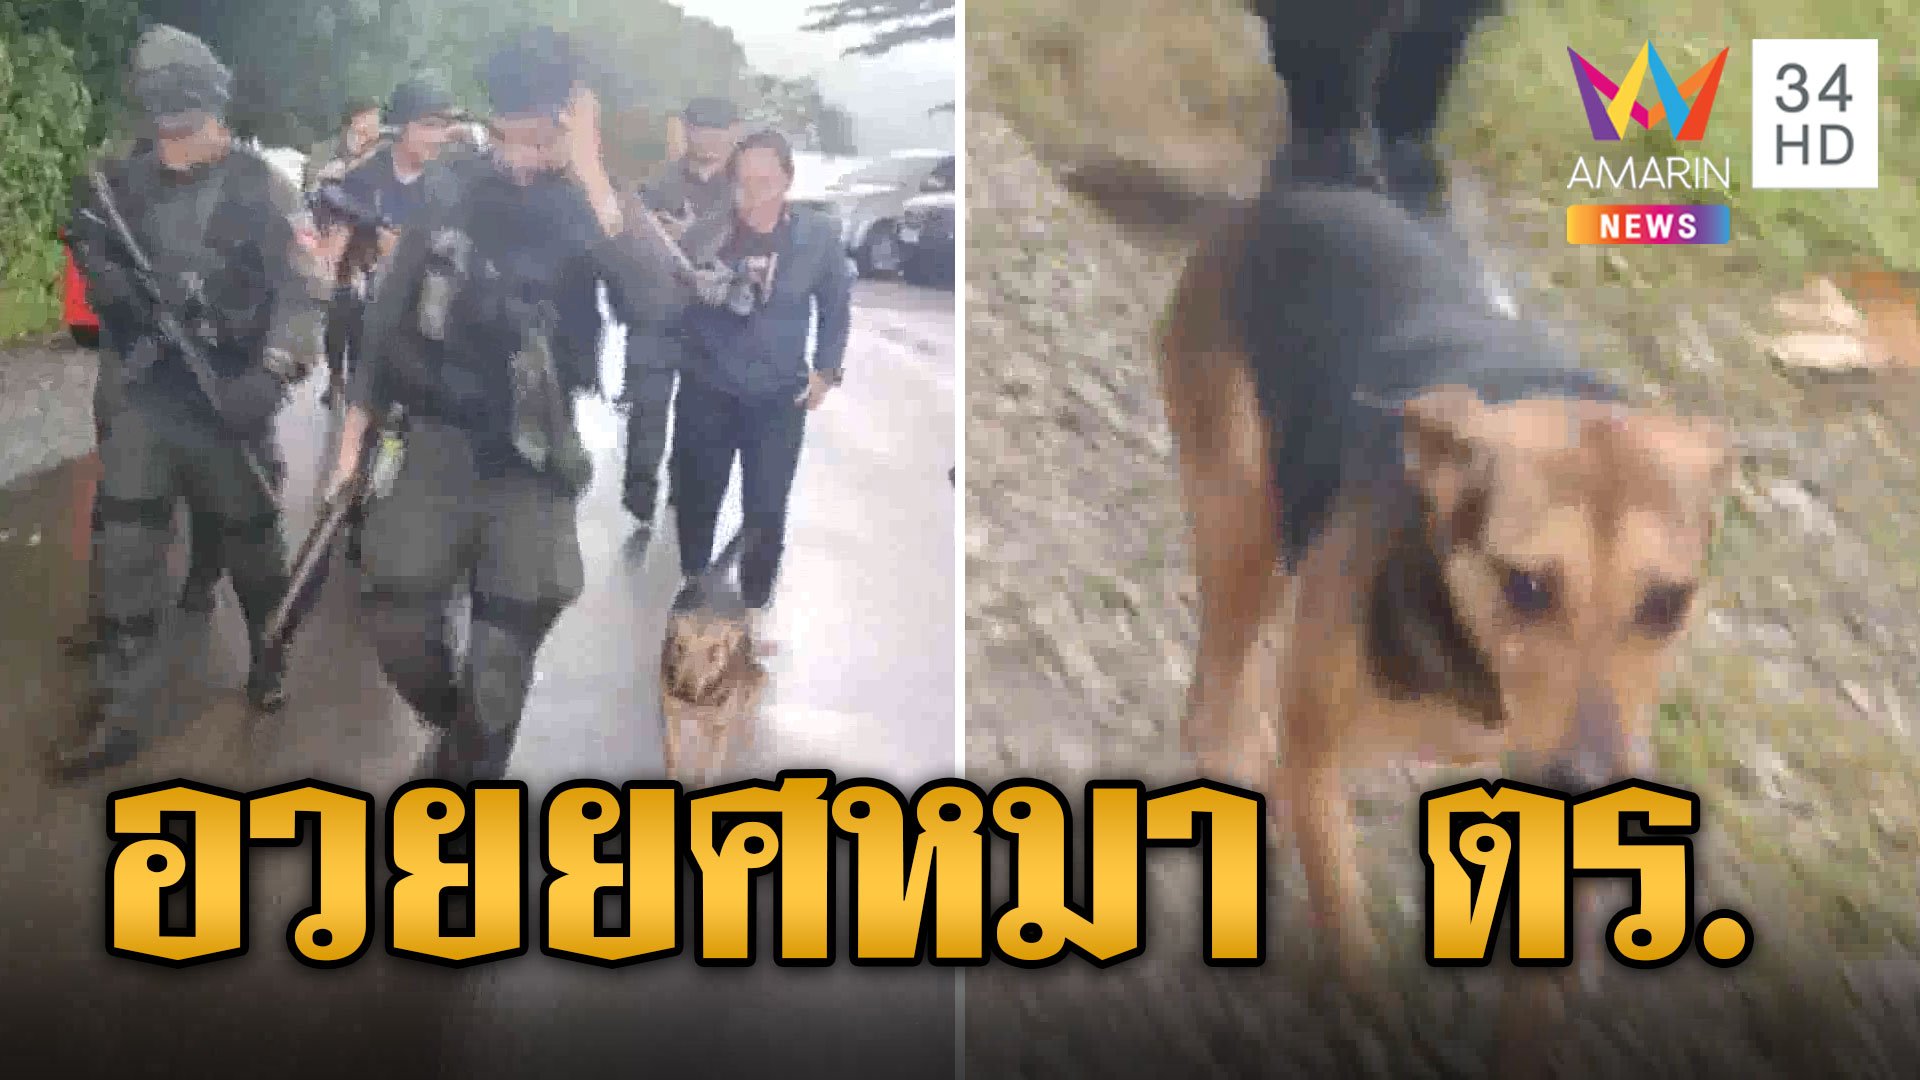 "เจ้าหมี" ได้อวยยศผันเป็นหมาตำรวจ วีรกรรมเคยเห่าช่วยเสี่ยแป้งจนหนีบนเขา คอมเมนต์สนั่นเชื่อแป้ง | ข่าวอรุณอมรินทร์ | 30 พ.ย. 66 | AMARIN TVHD34